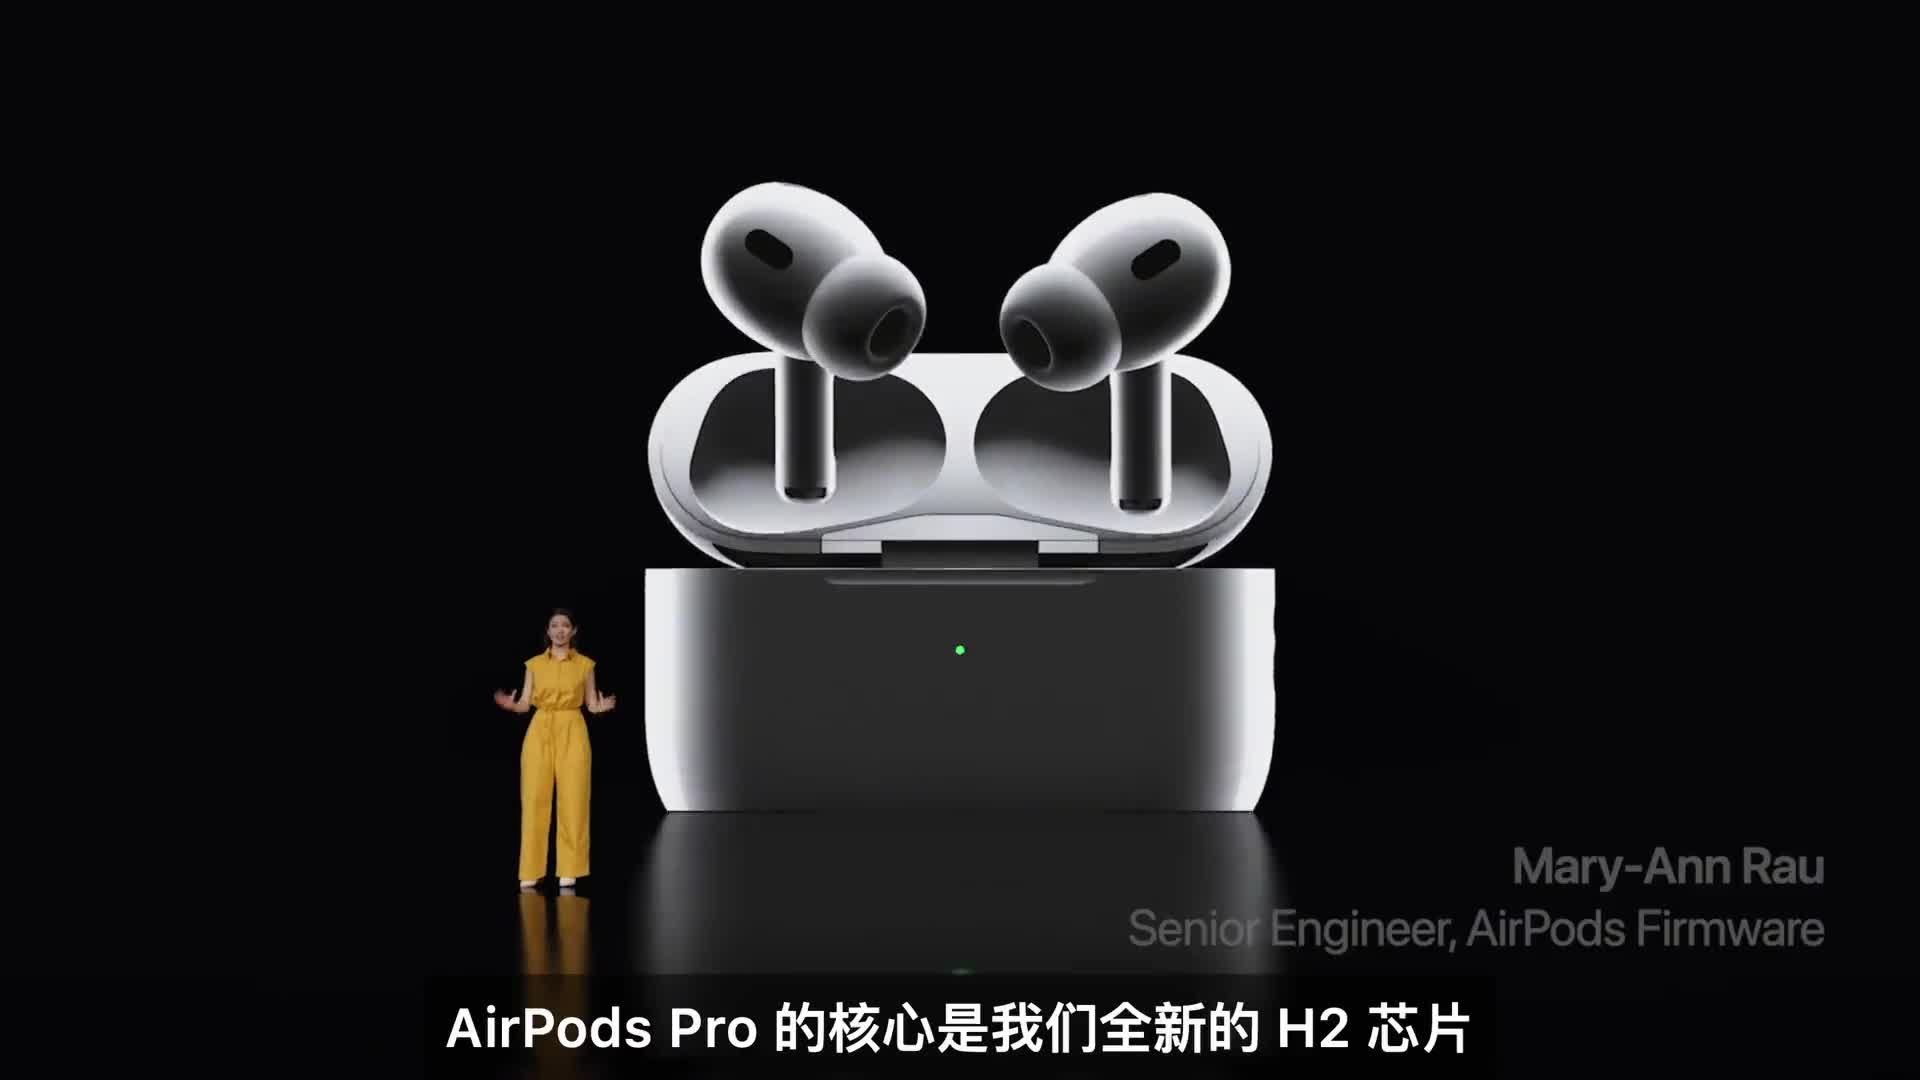 2分钟看完苹果Airpods Pro 2代！ #苹果发布会 